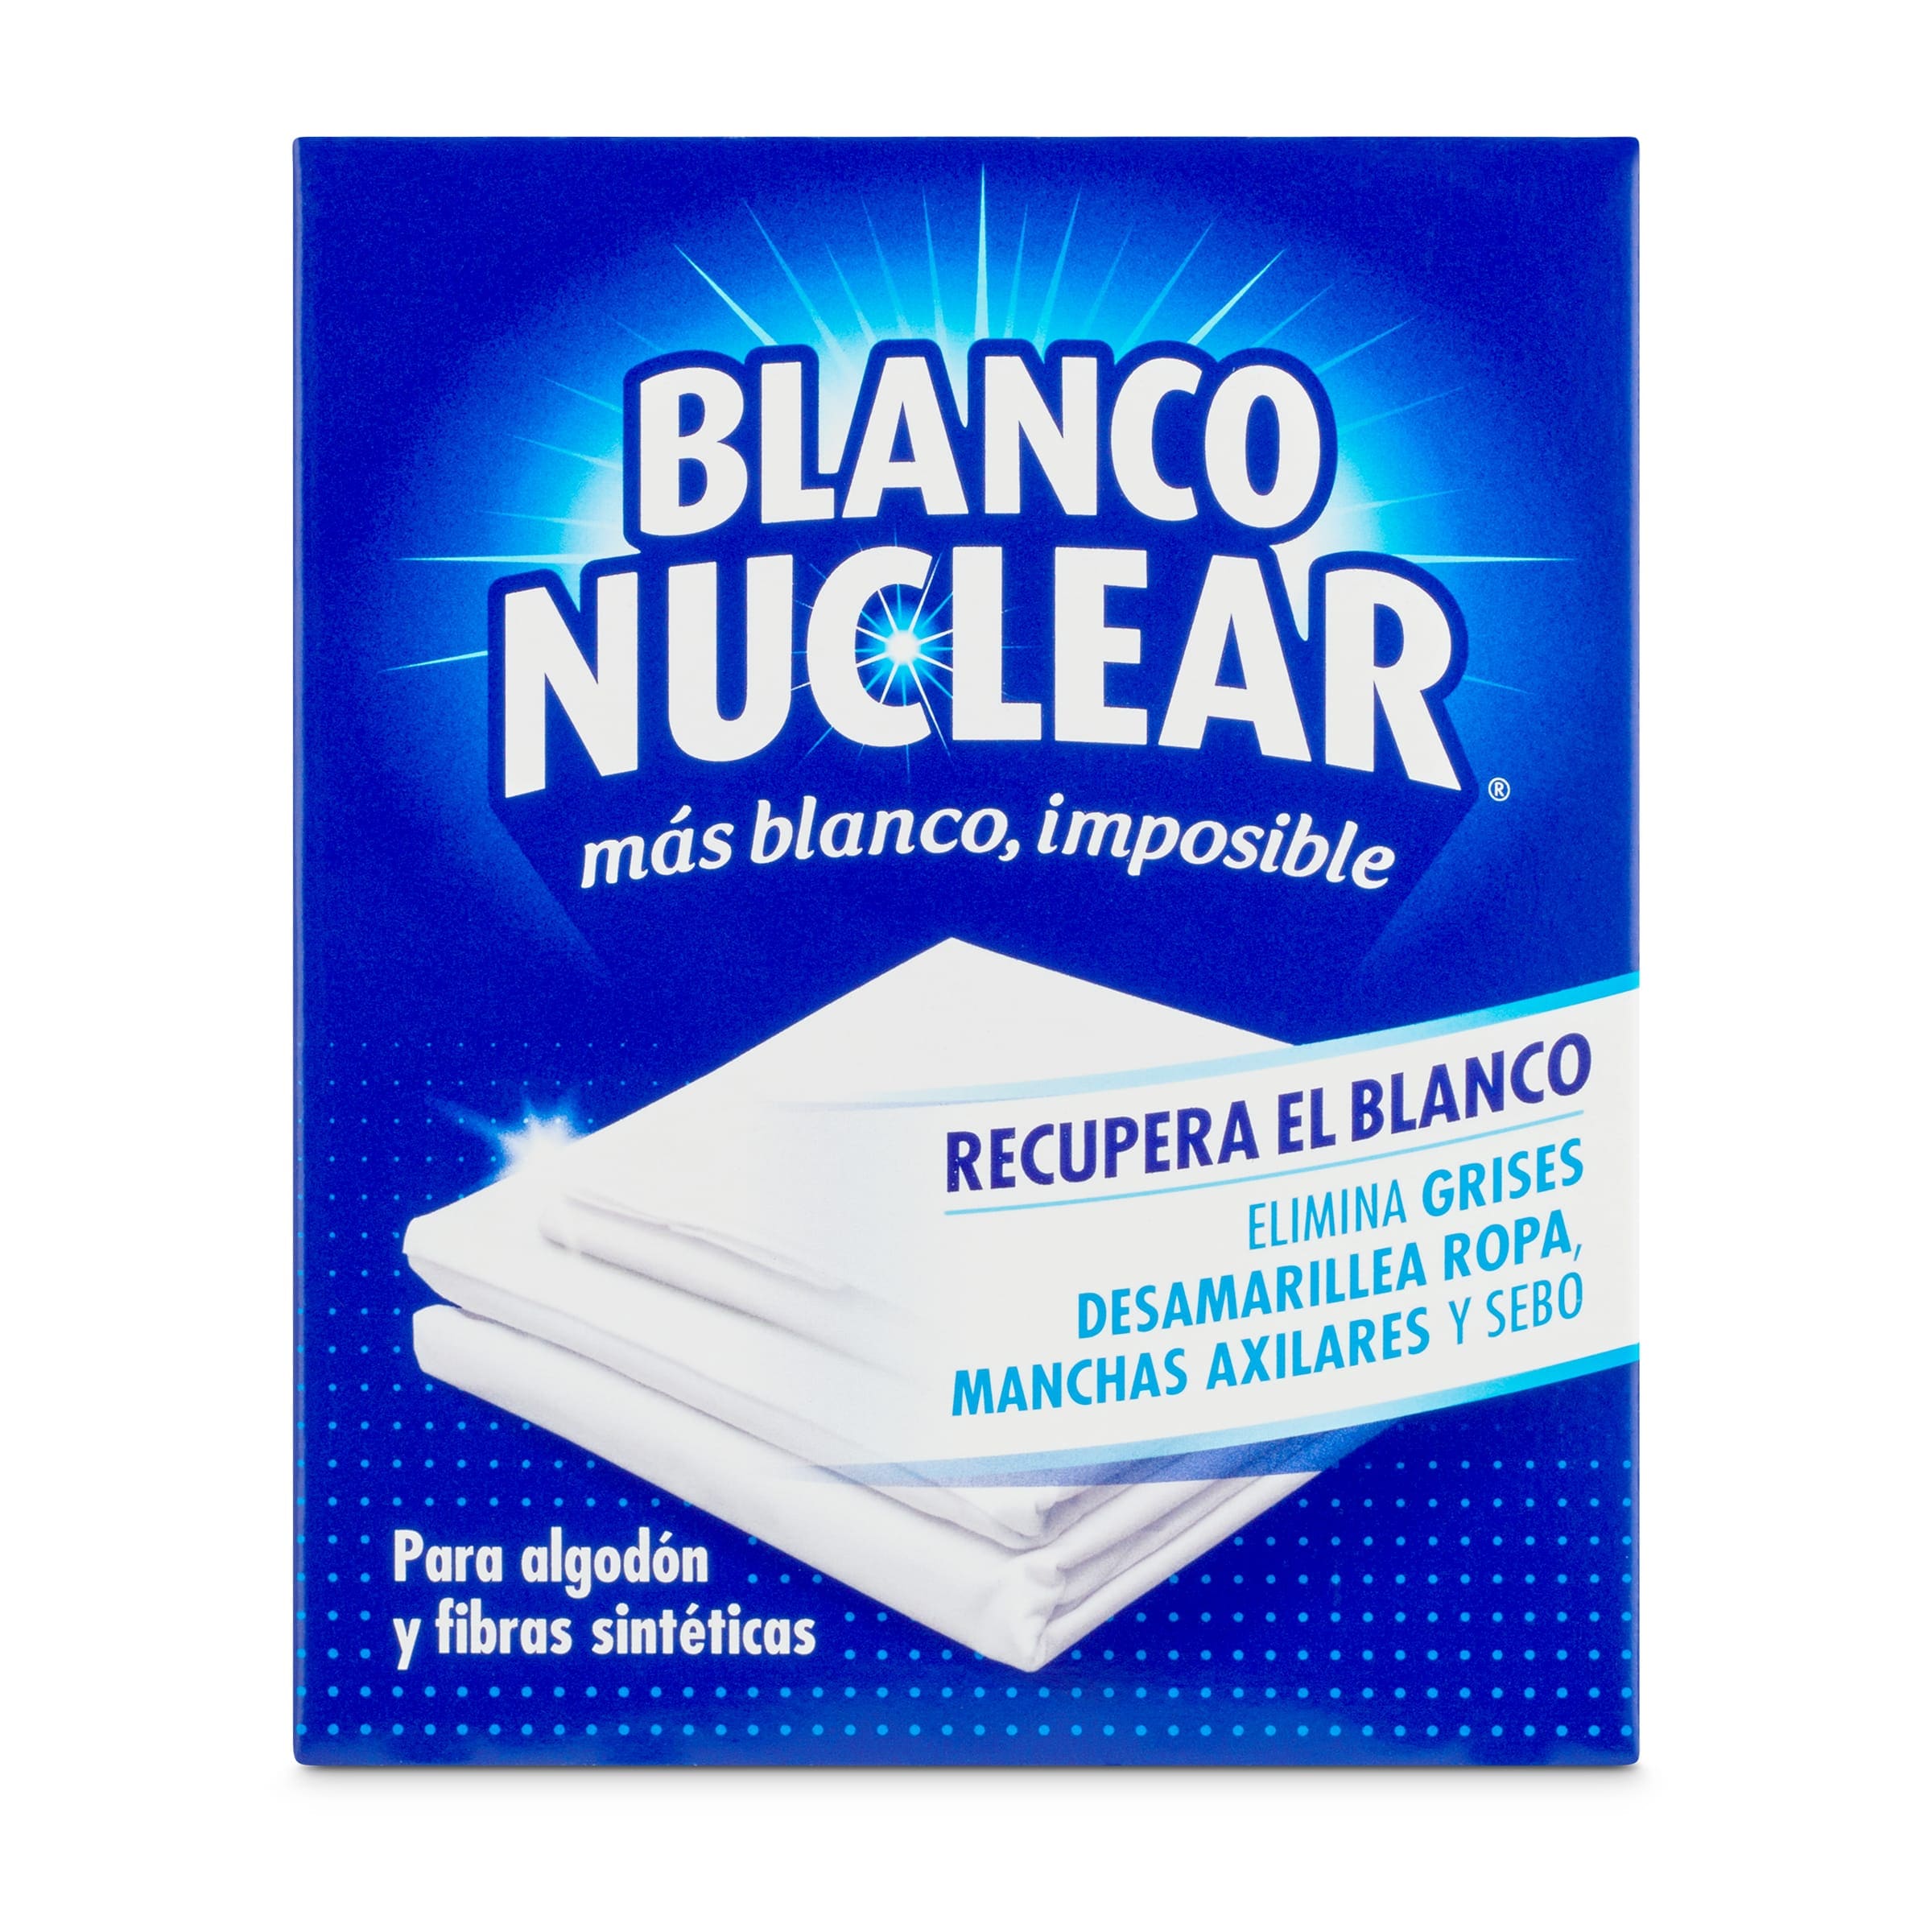 Blanqueador Blanco Nuclear  ¡Haz la compra en Consum!